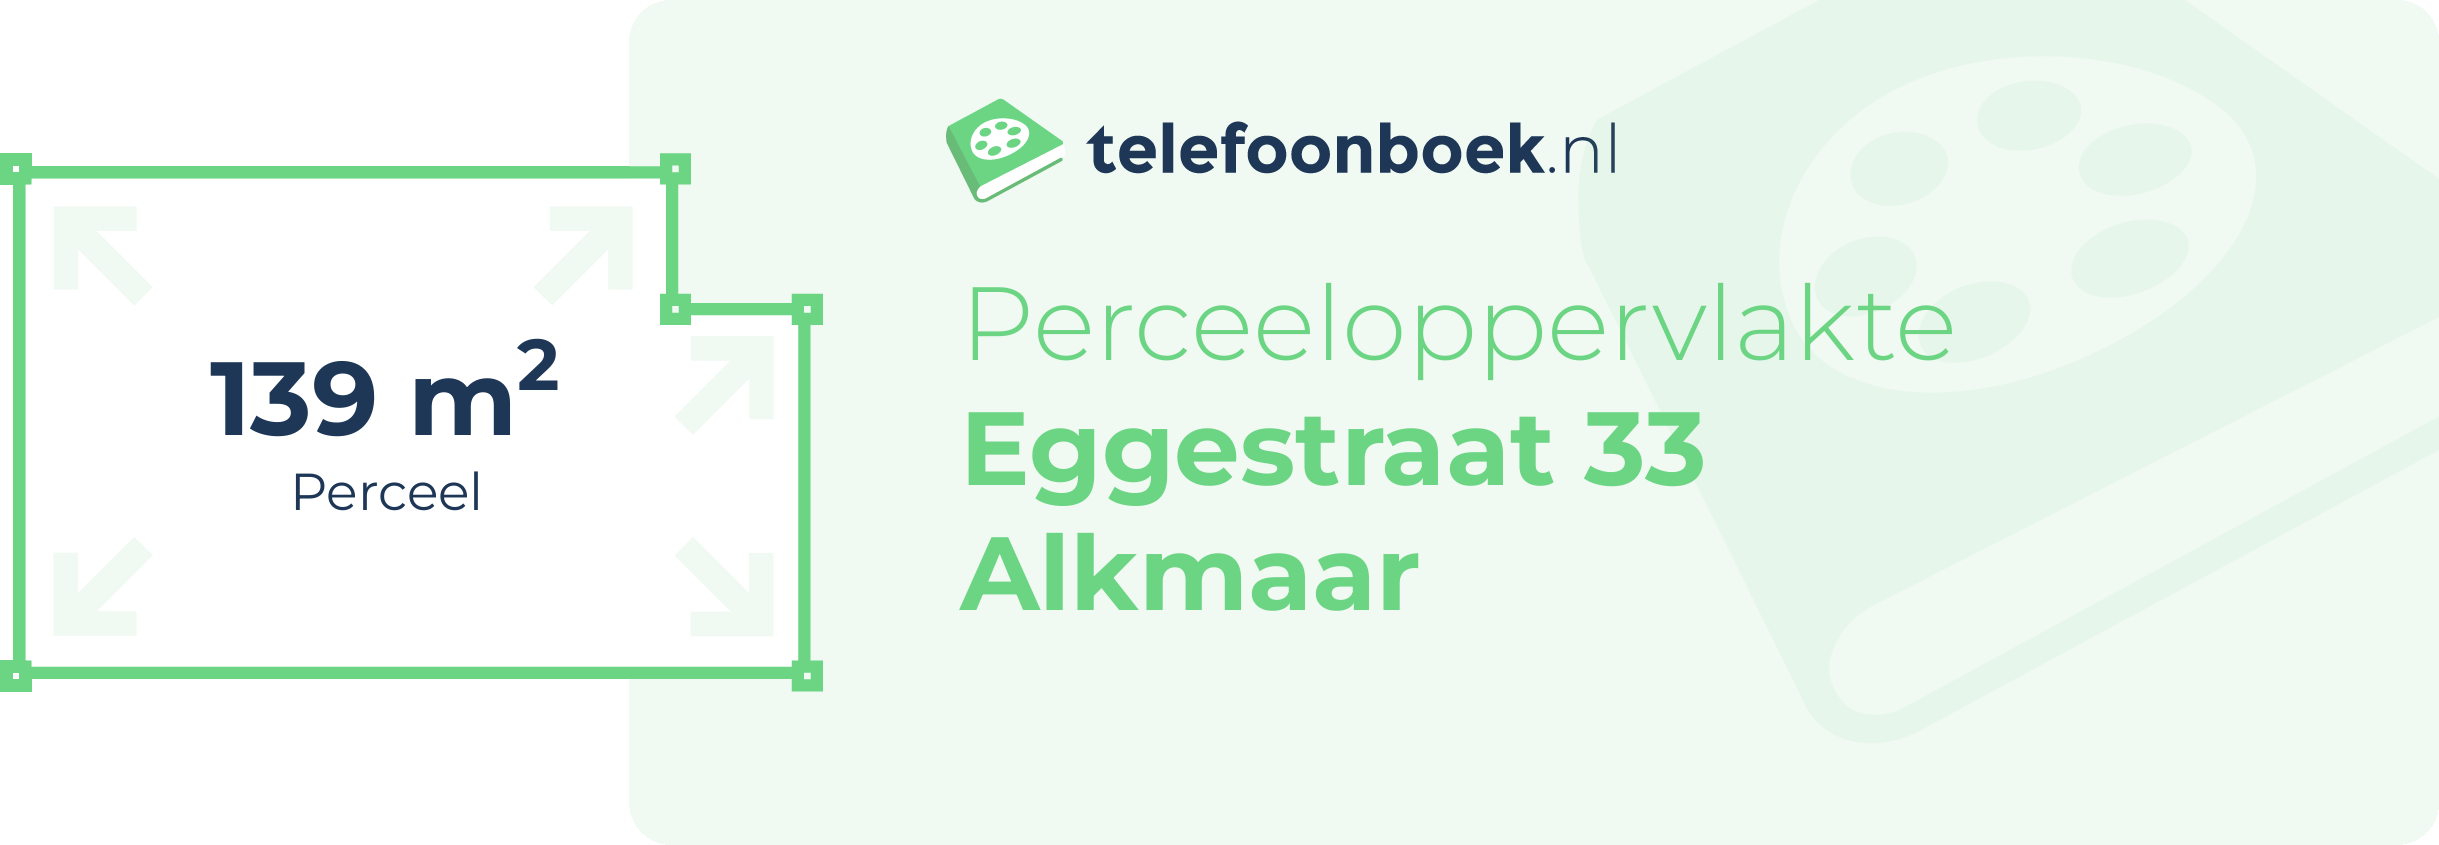 Perceeloppervlakte Eggestraat 33 Alkmaar